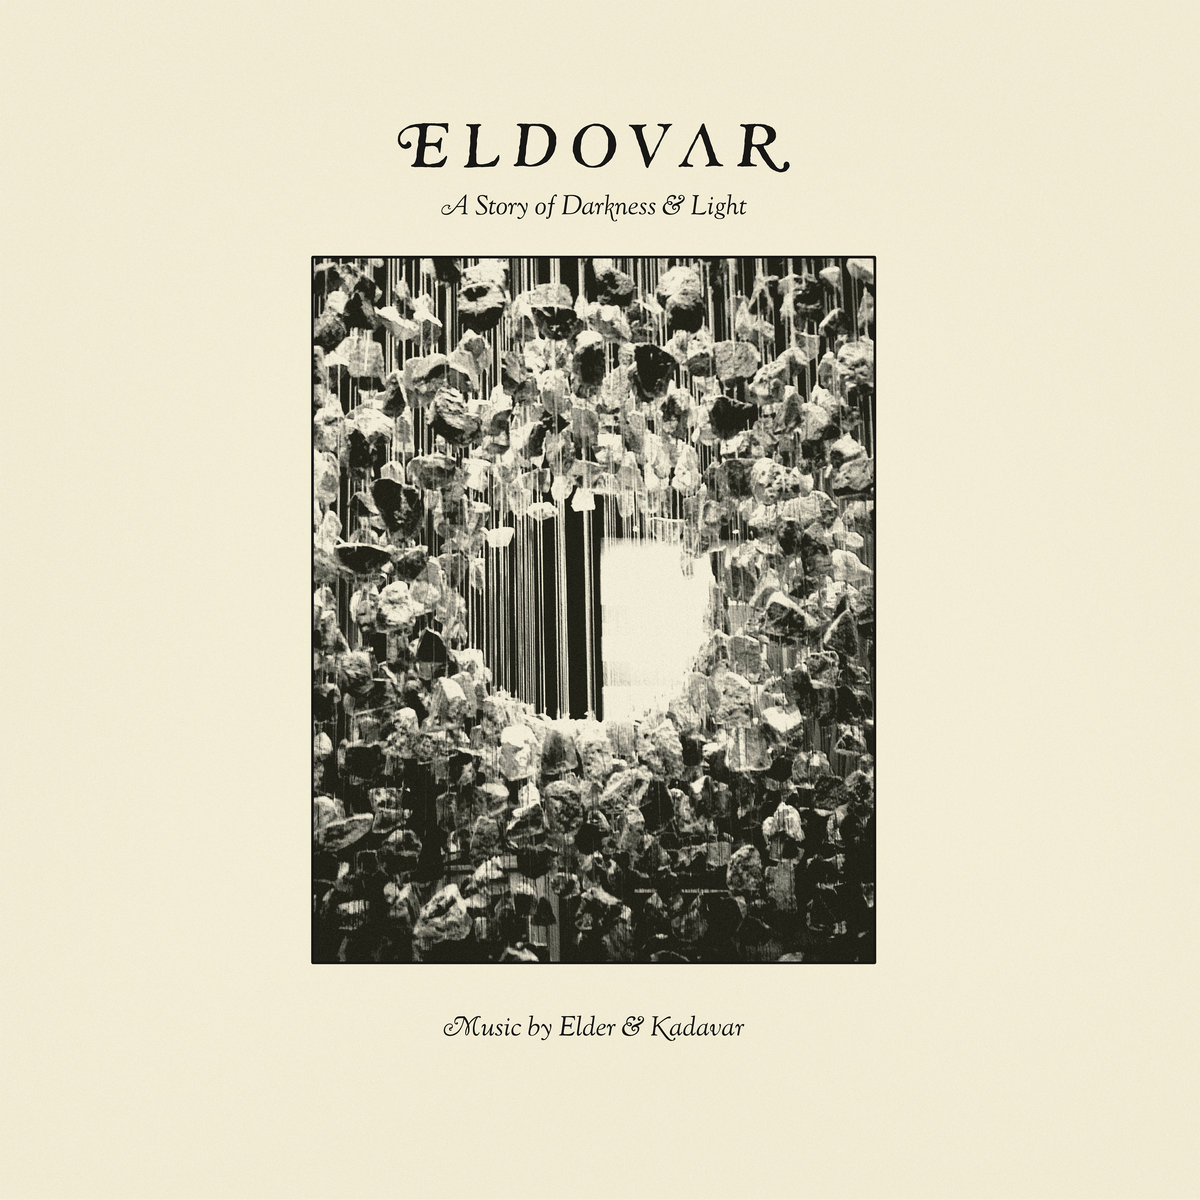 Eldovar: A Story of Darkness & Light